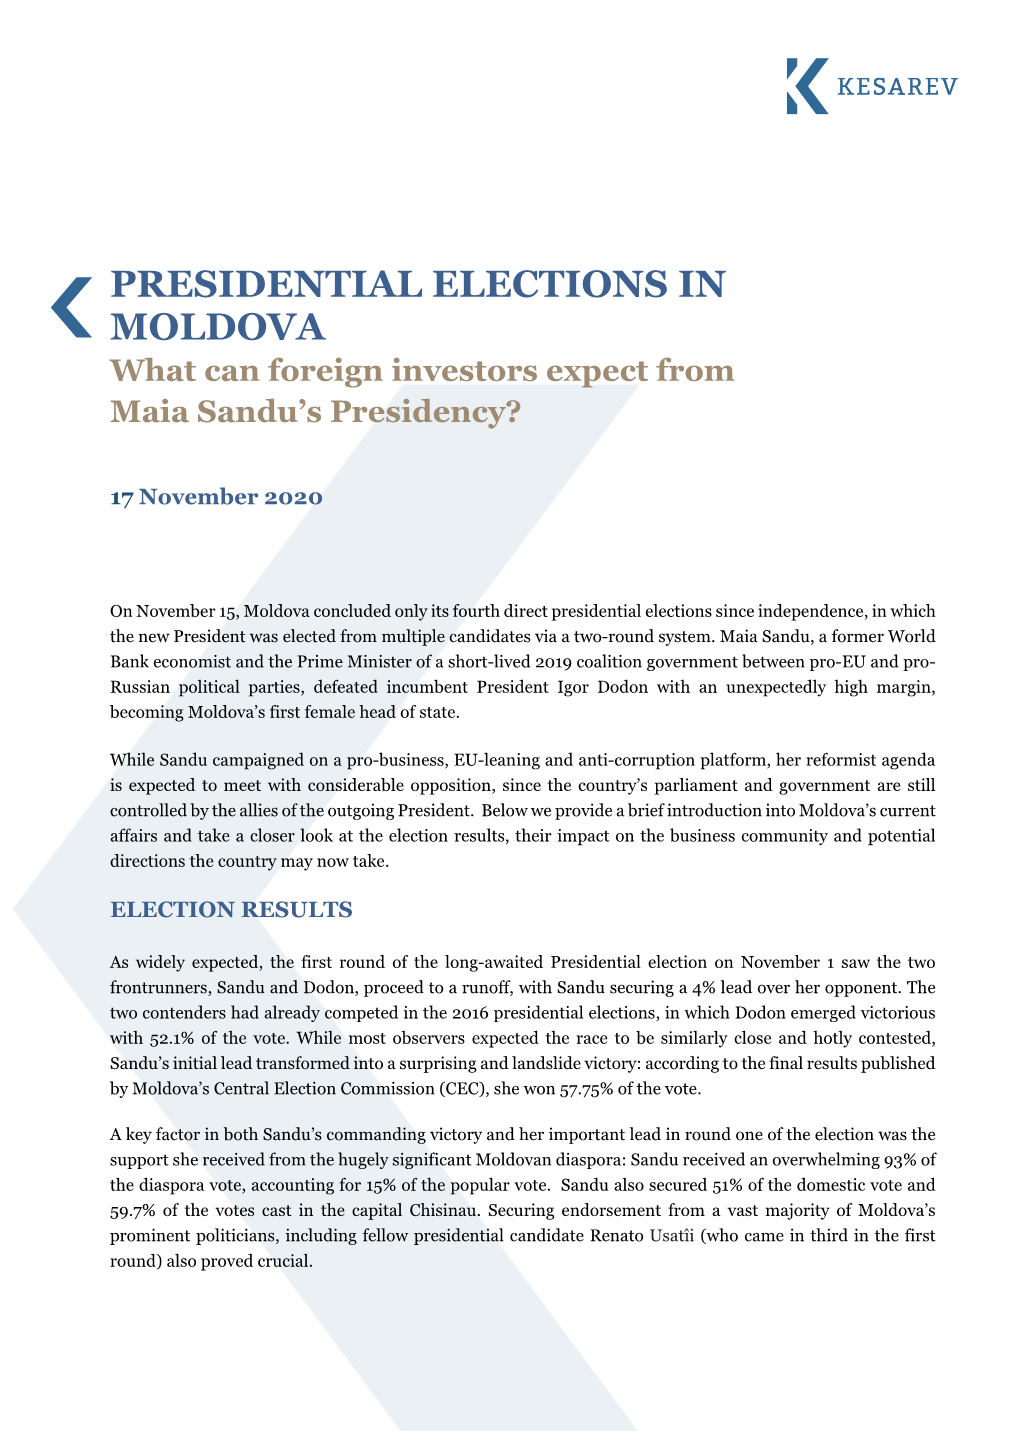 Presidential Elections in Moldova | November 2020